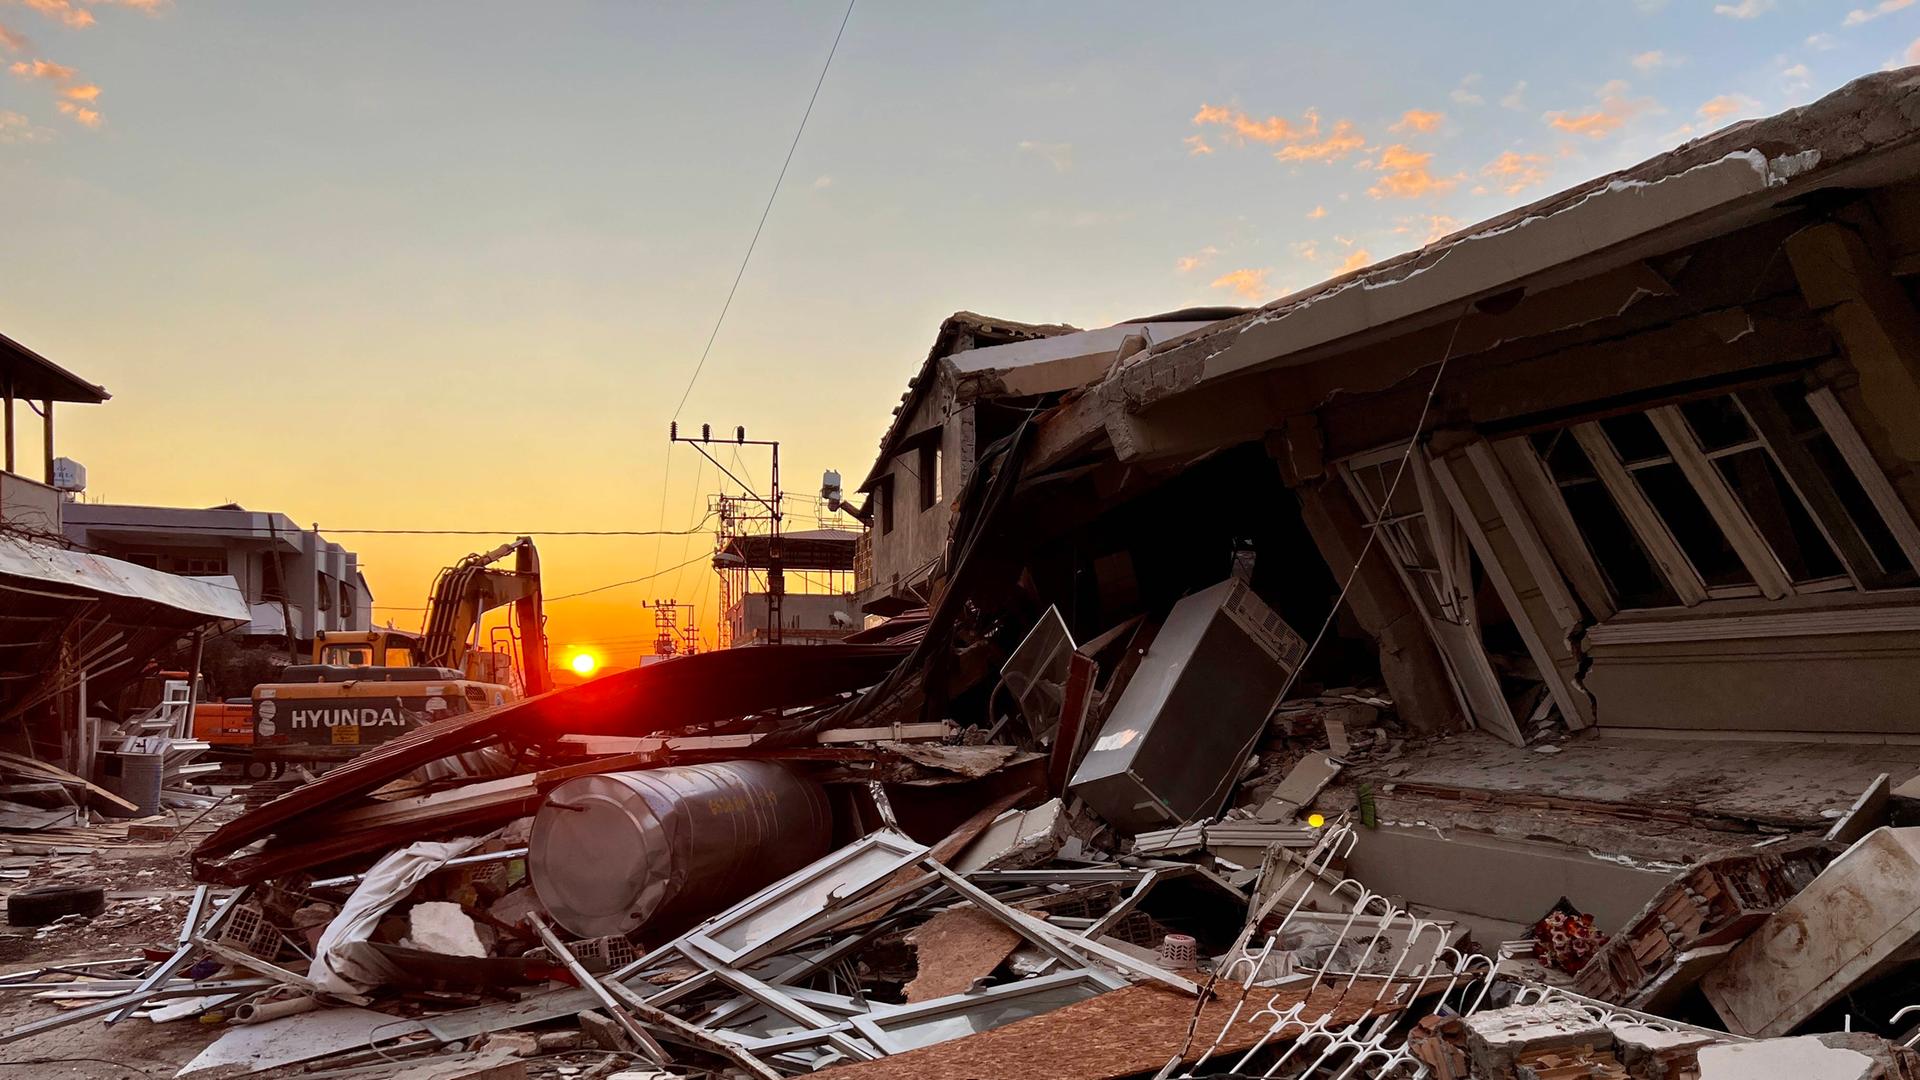 10.02.2023 Stadt KÃrÃkhan, Region Hatay, Türkei. Zerstörte Häuser nach dem Erdbeben.